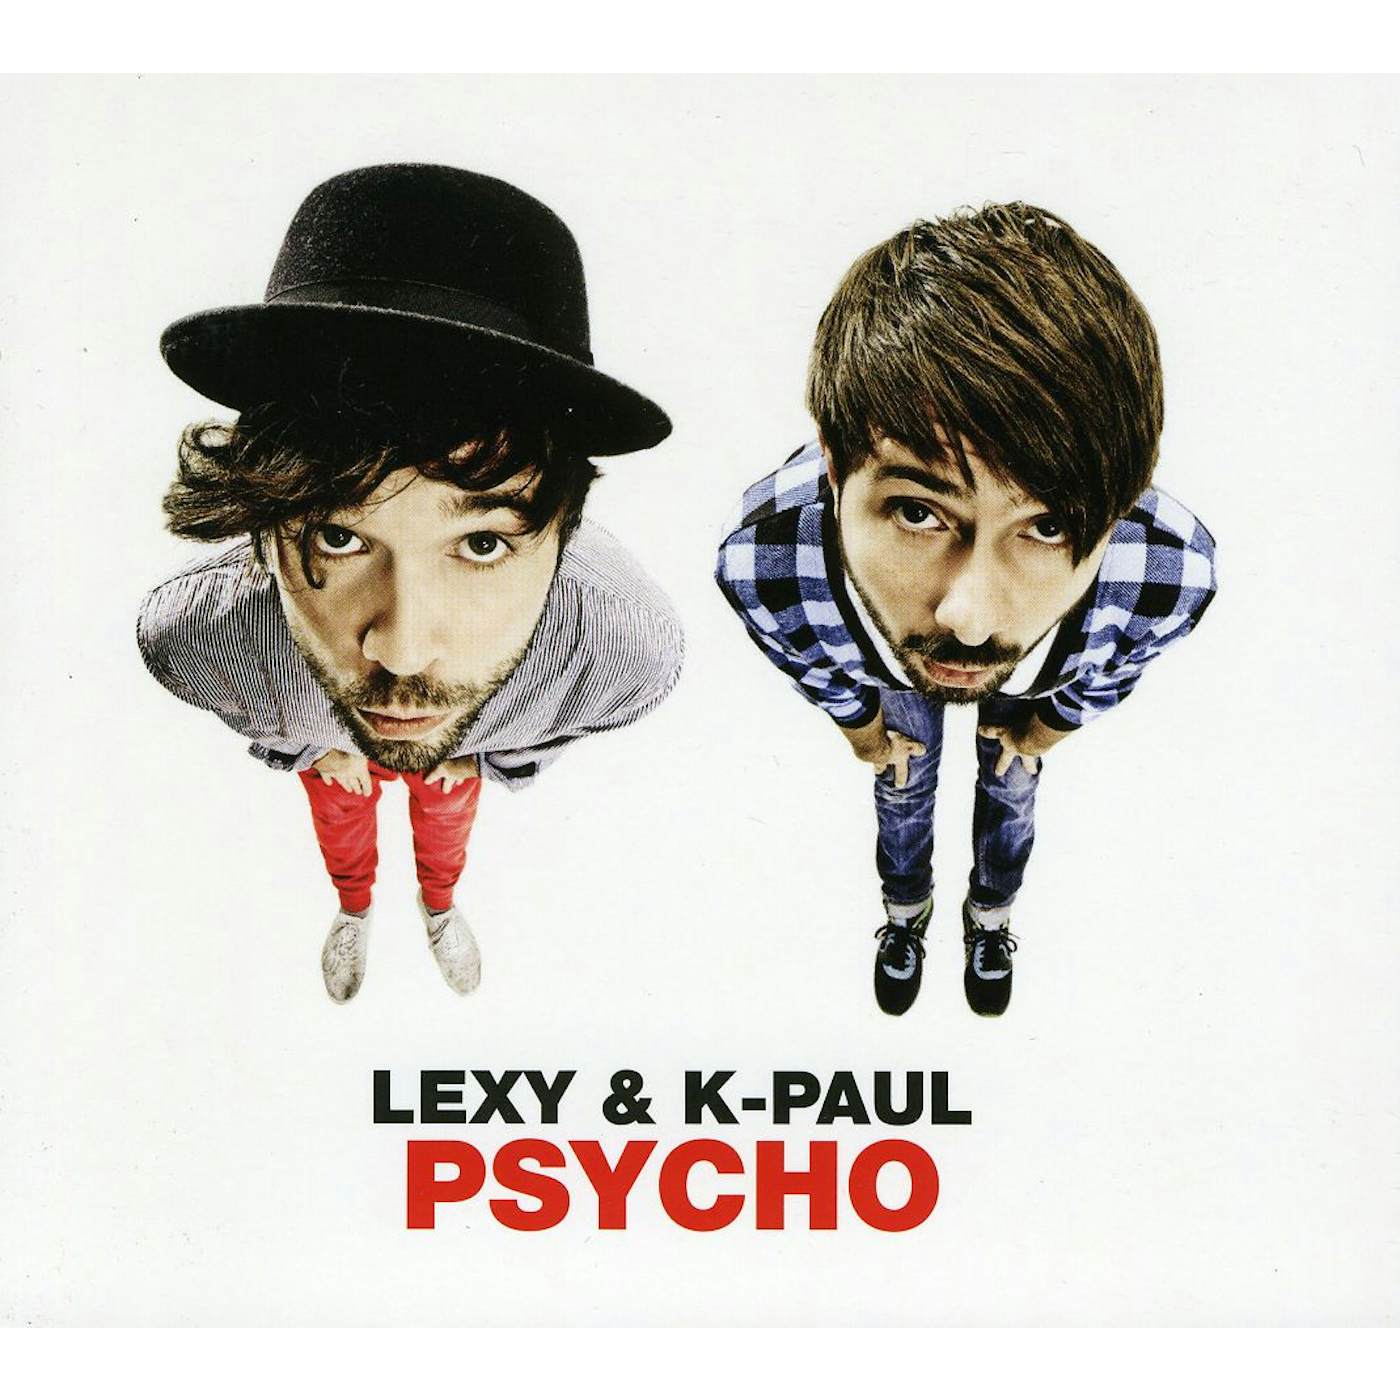 Lexy & K-Paul PSYCHO CD